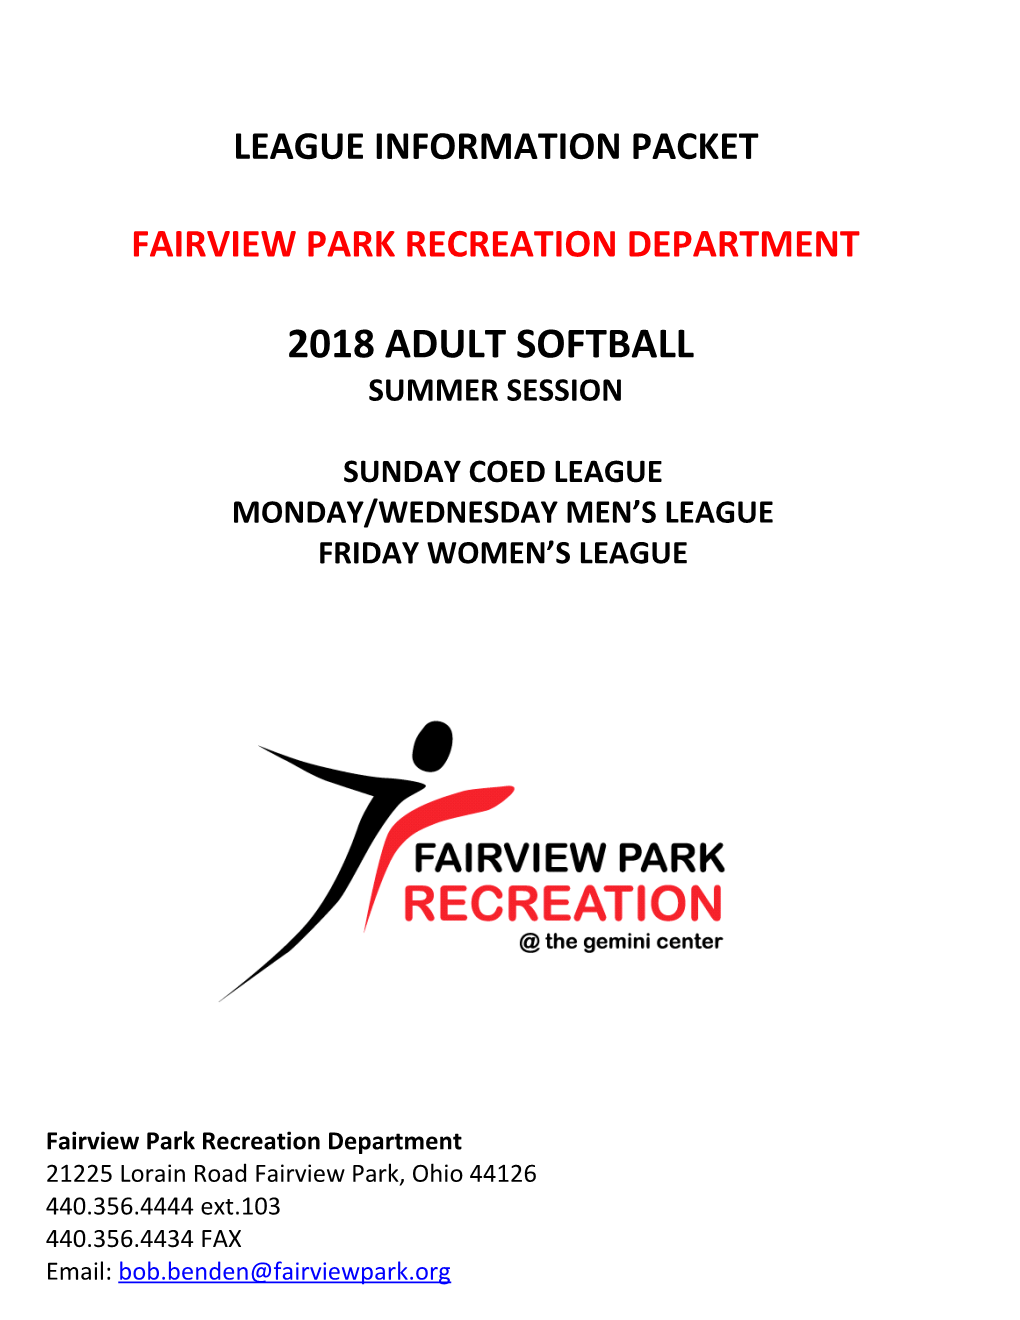 Fairview Park Recreation Department